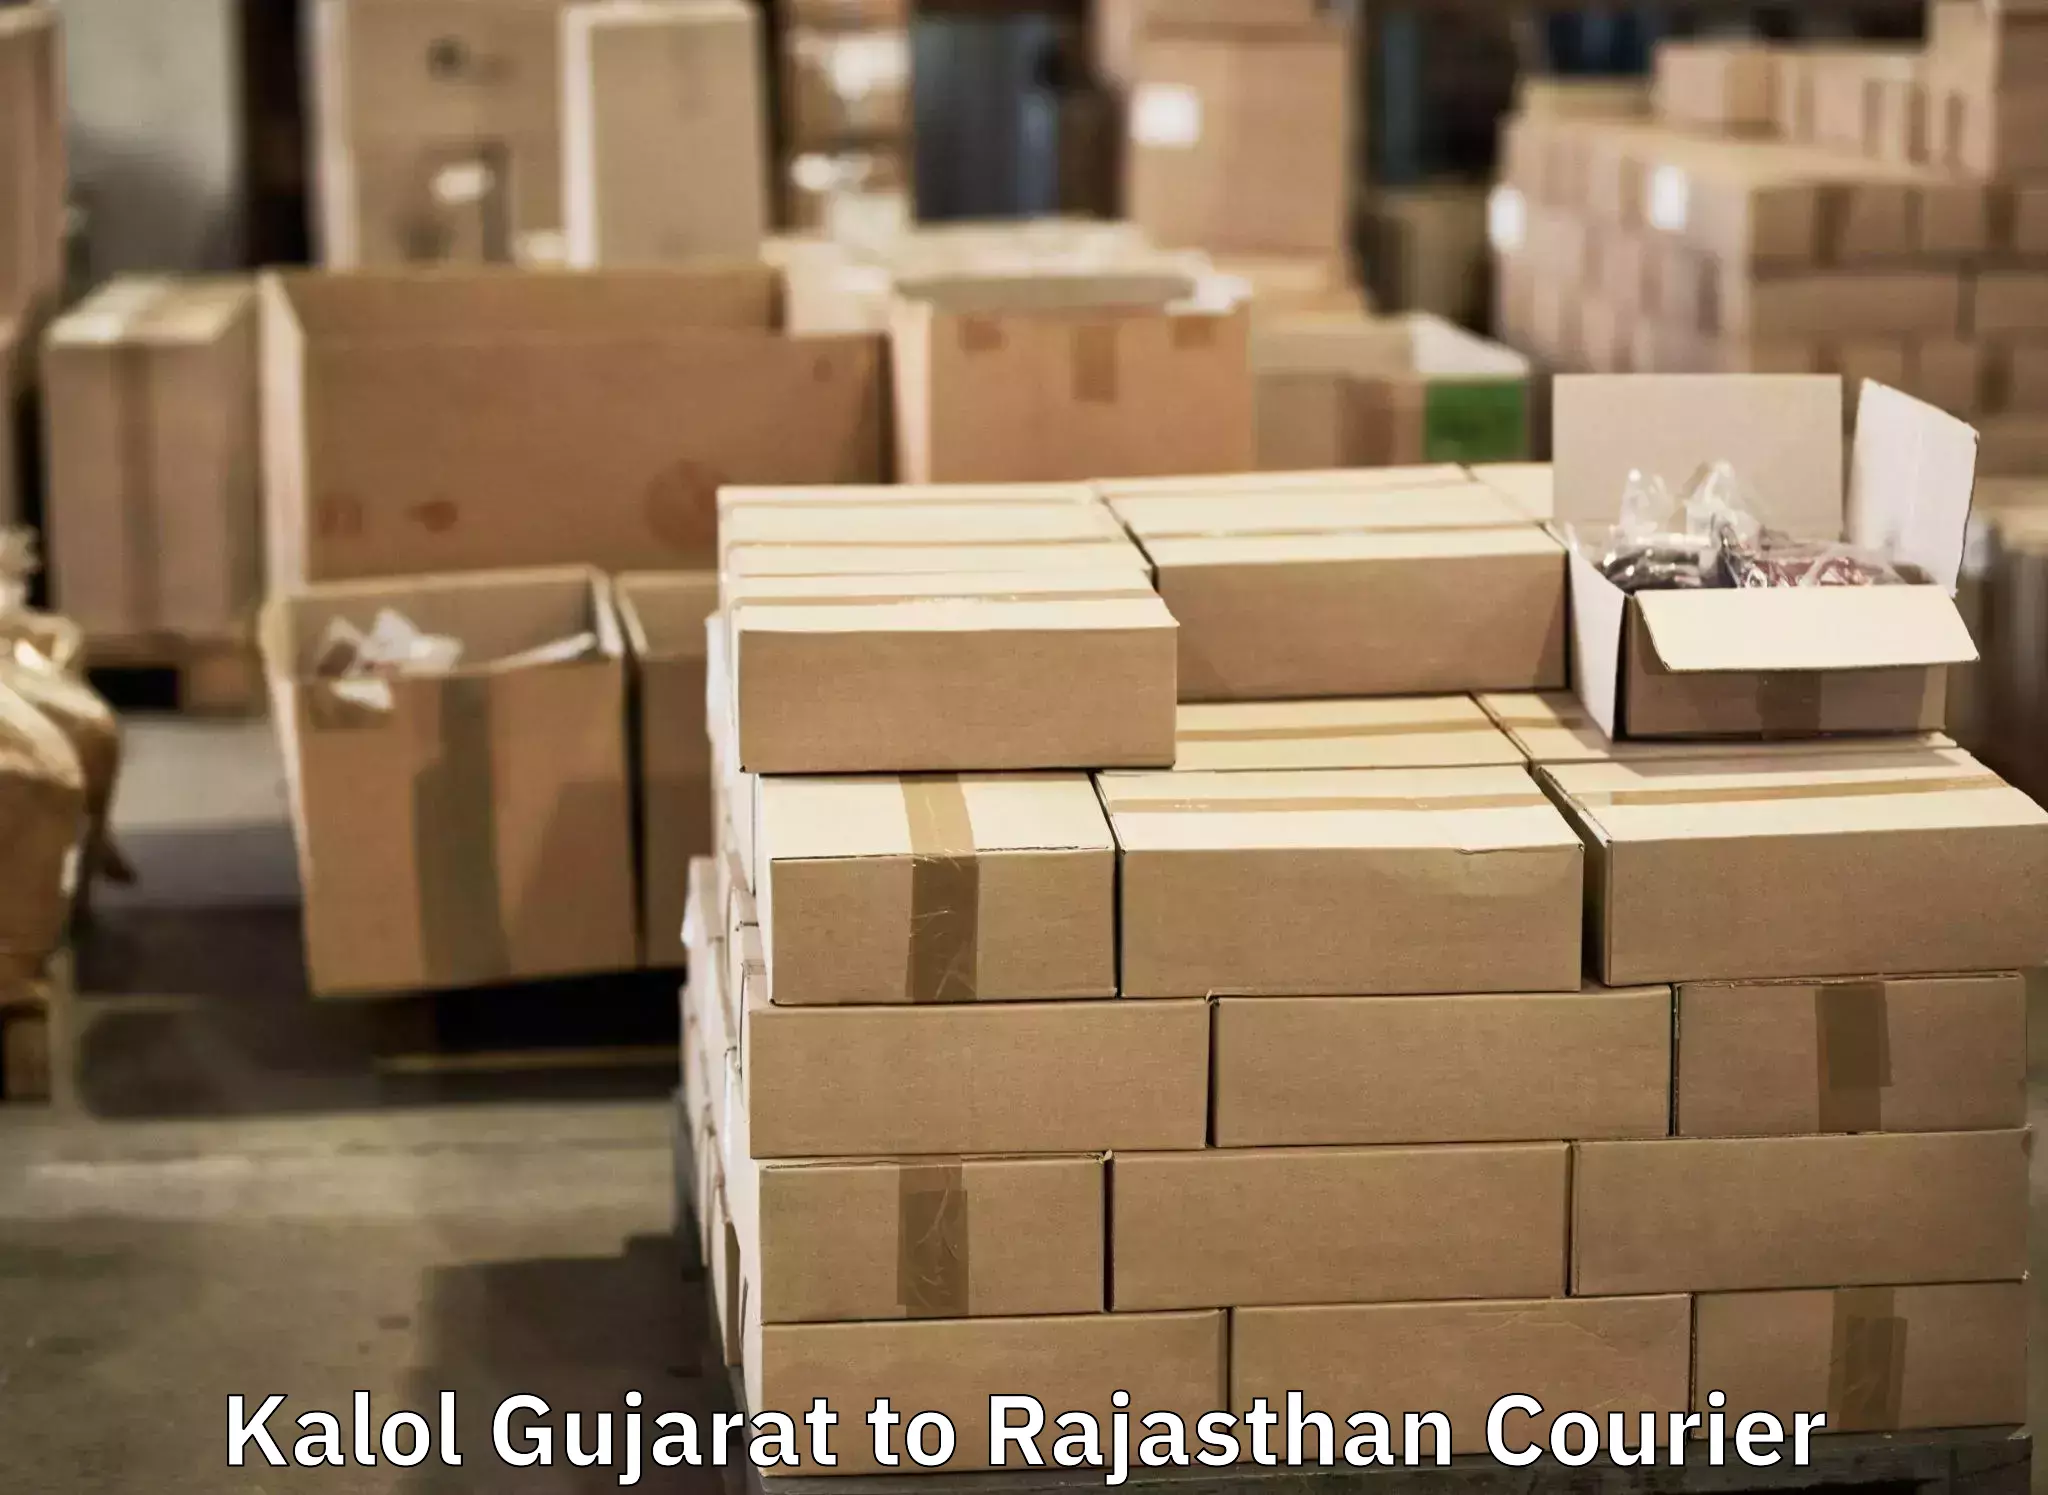 Luggage transport service Kalol Gujarat to Rajasthan